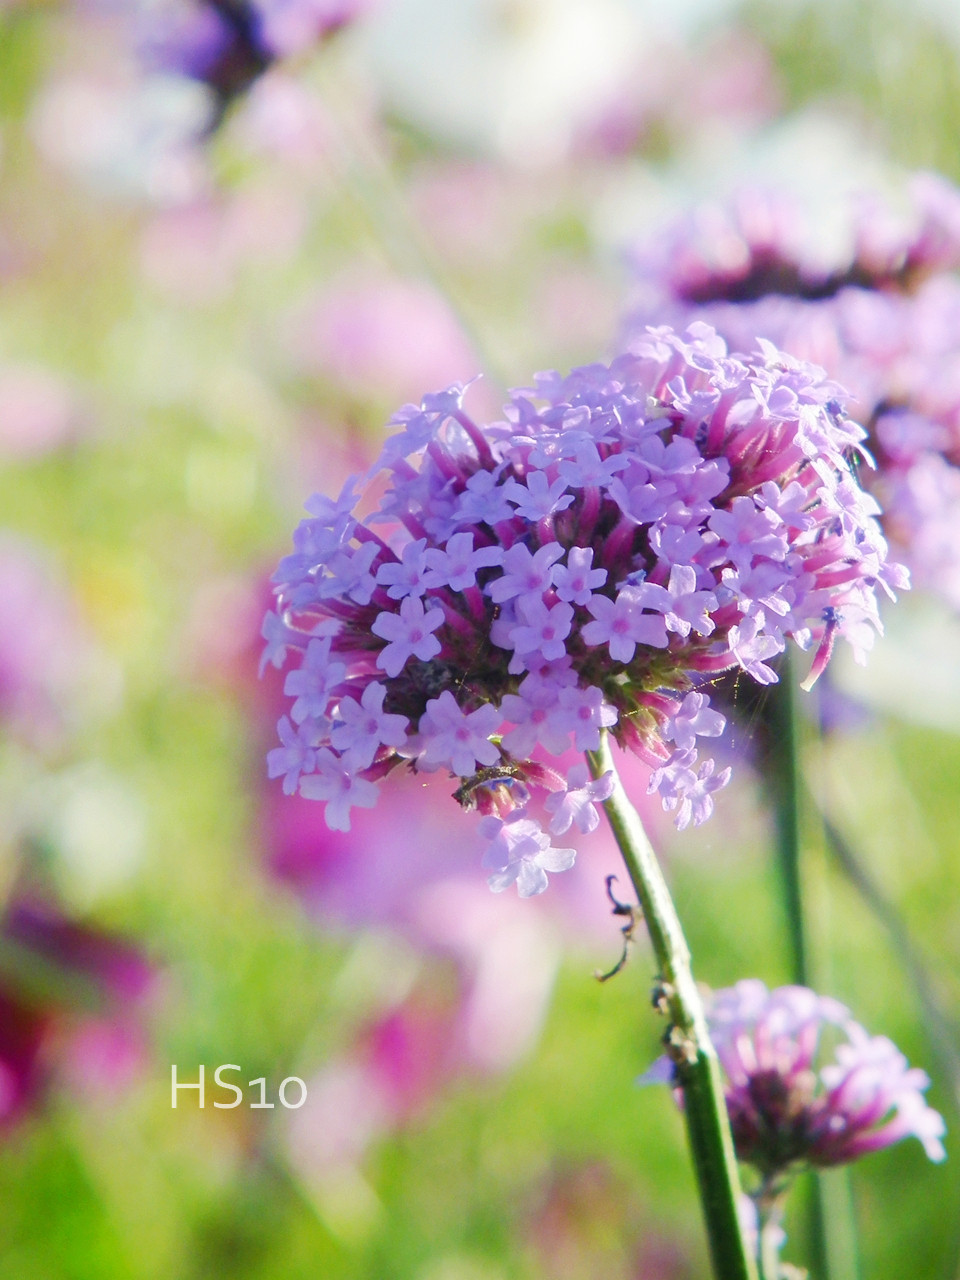 50 素晴らしい花 可愛い 名前 最高の花の画像